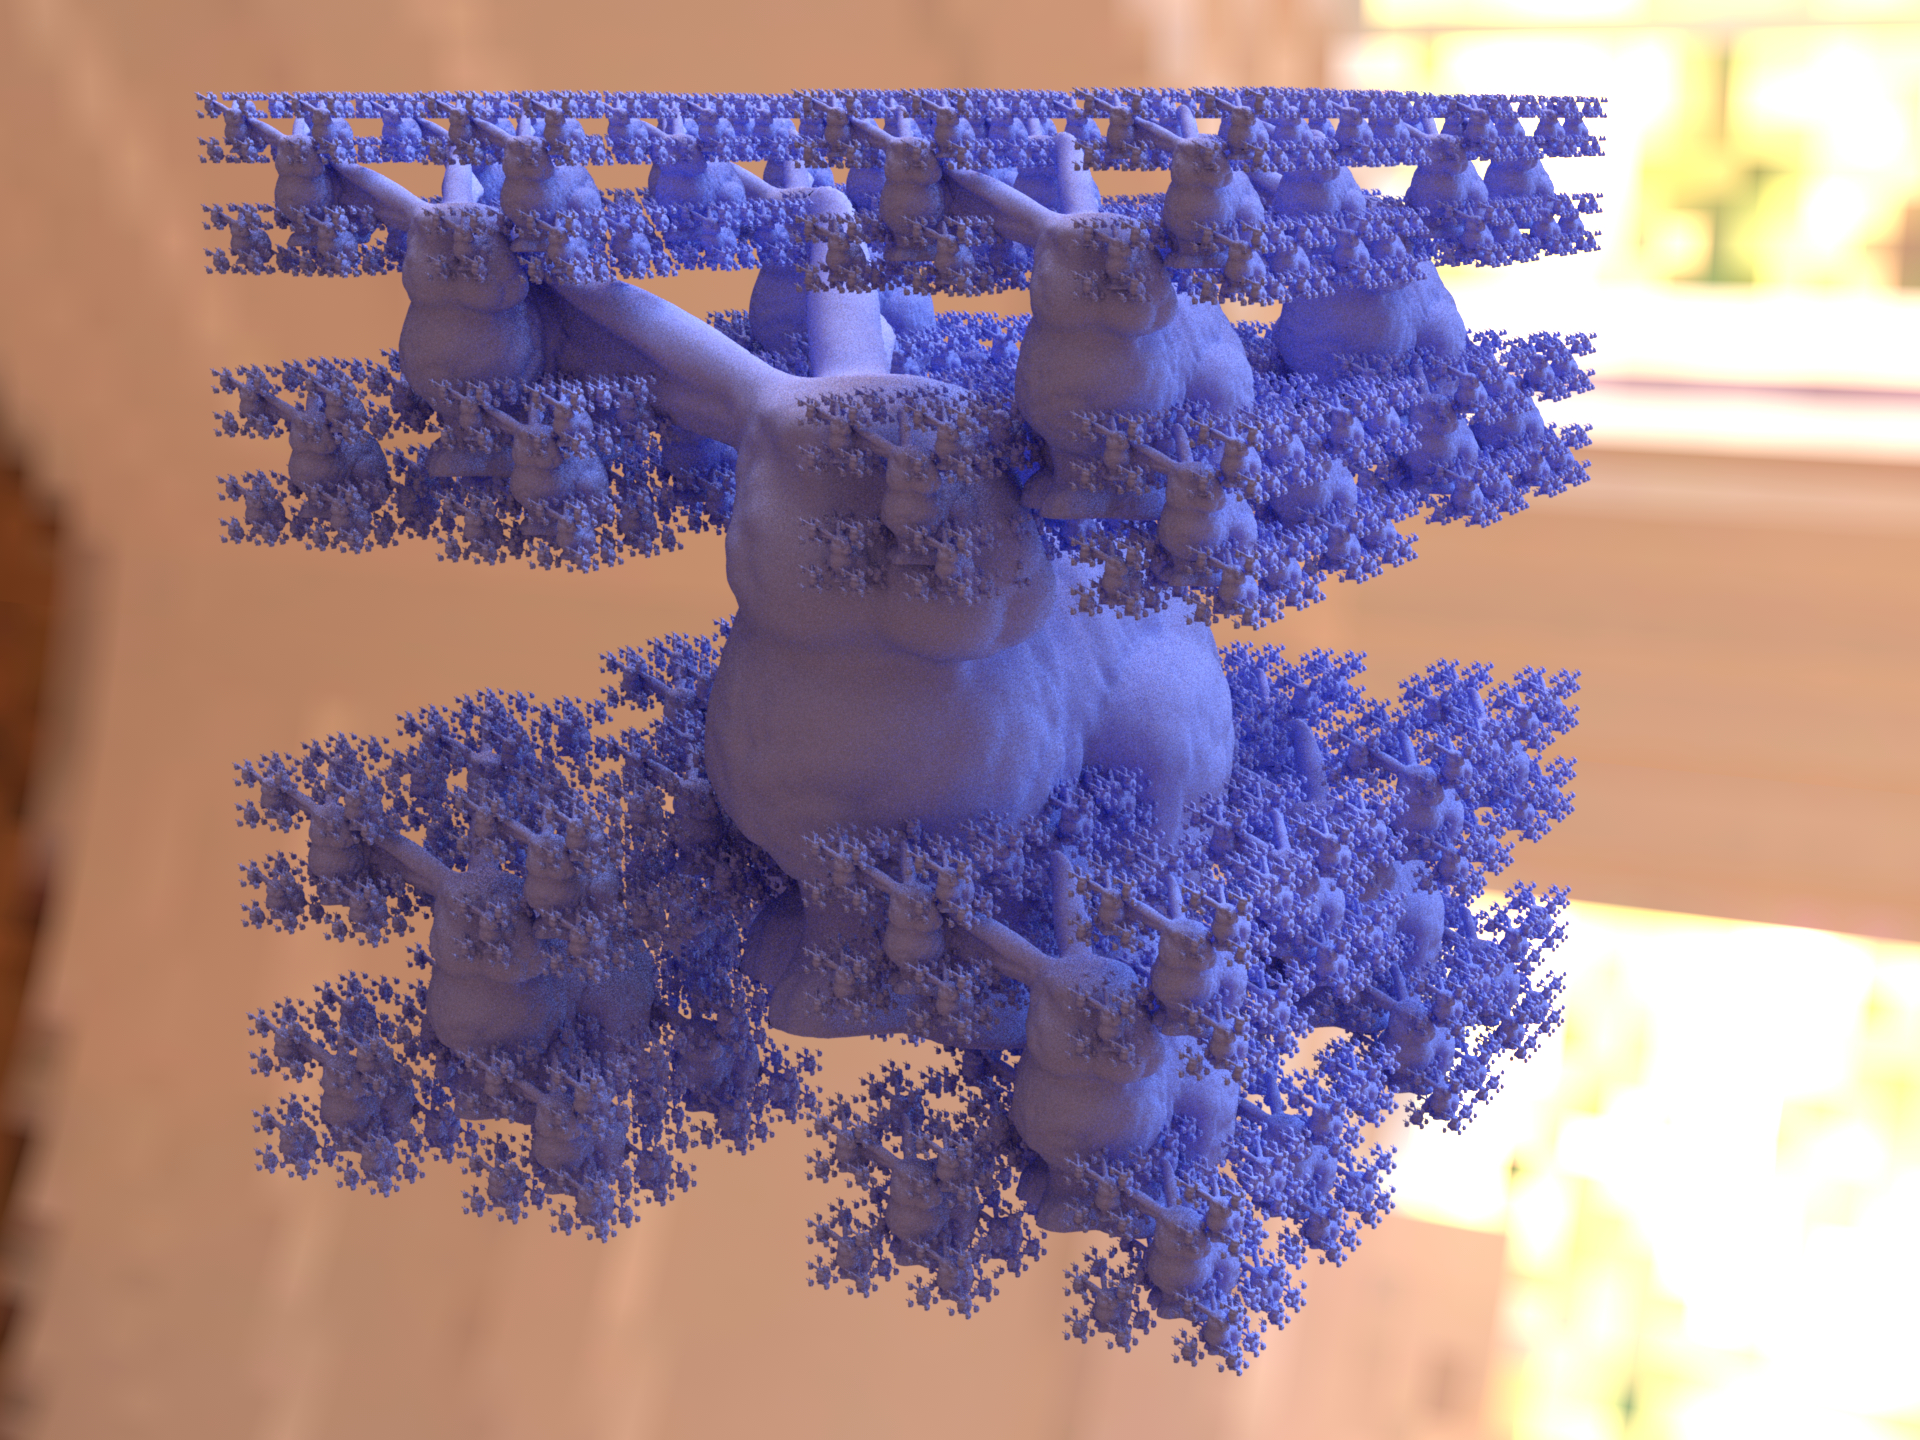 ../../_images/shape_instance_fractal.jpg